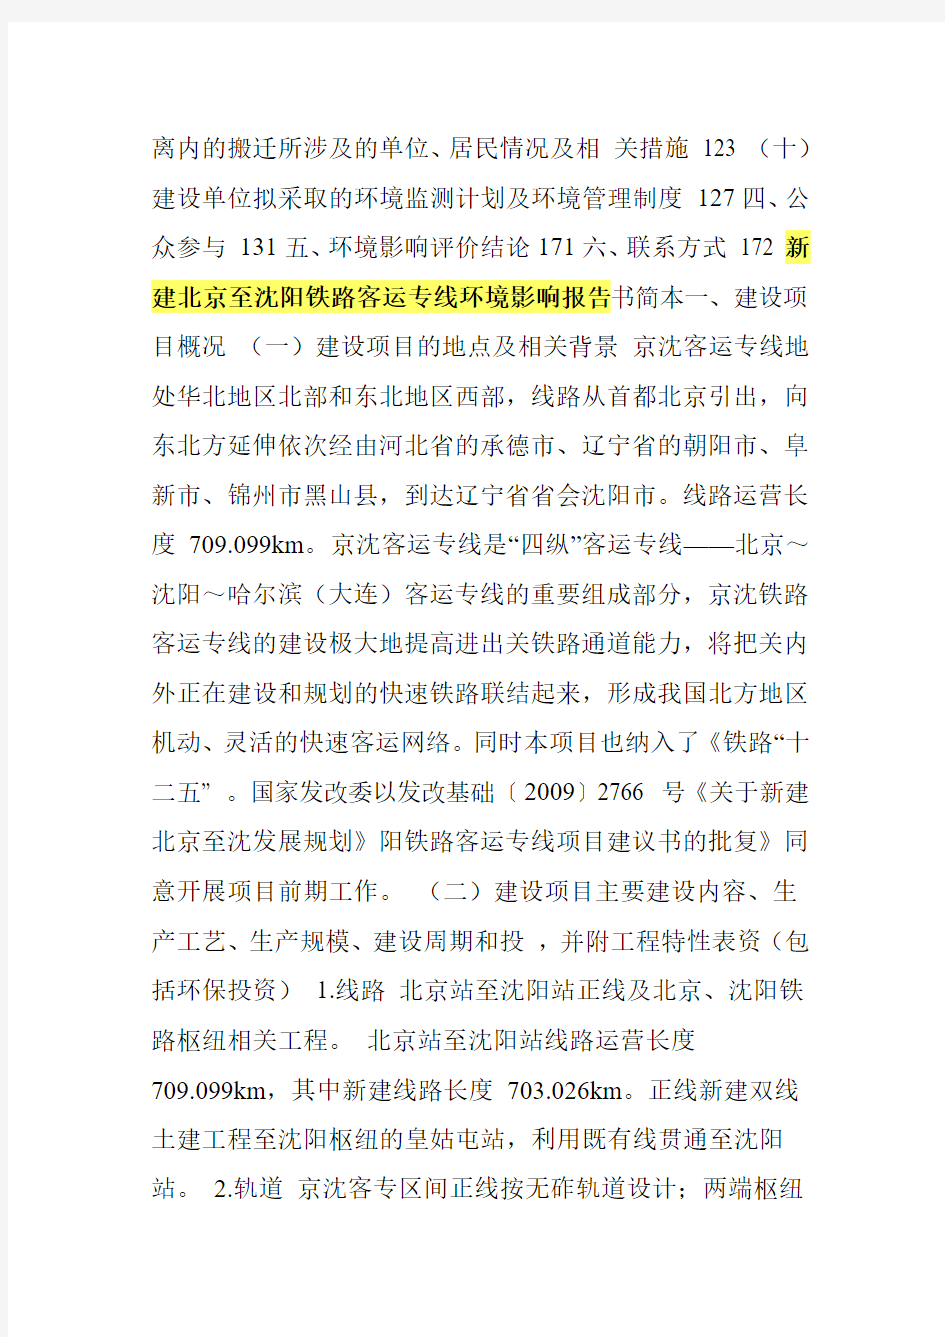 新建北京至沈阳铁路客运专线环境影响报告书